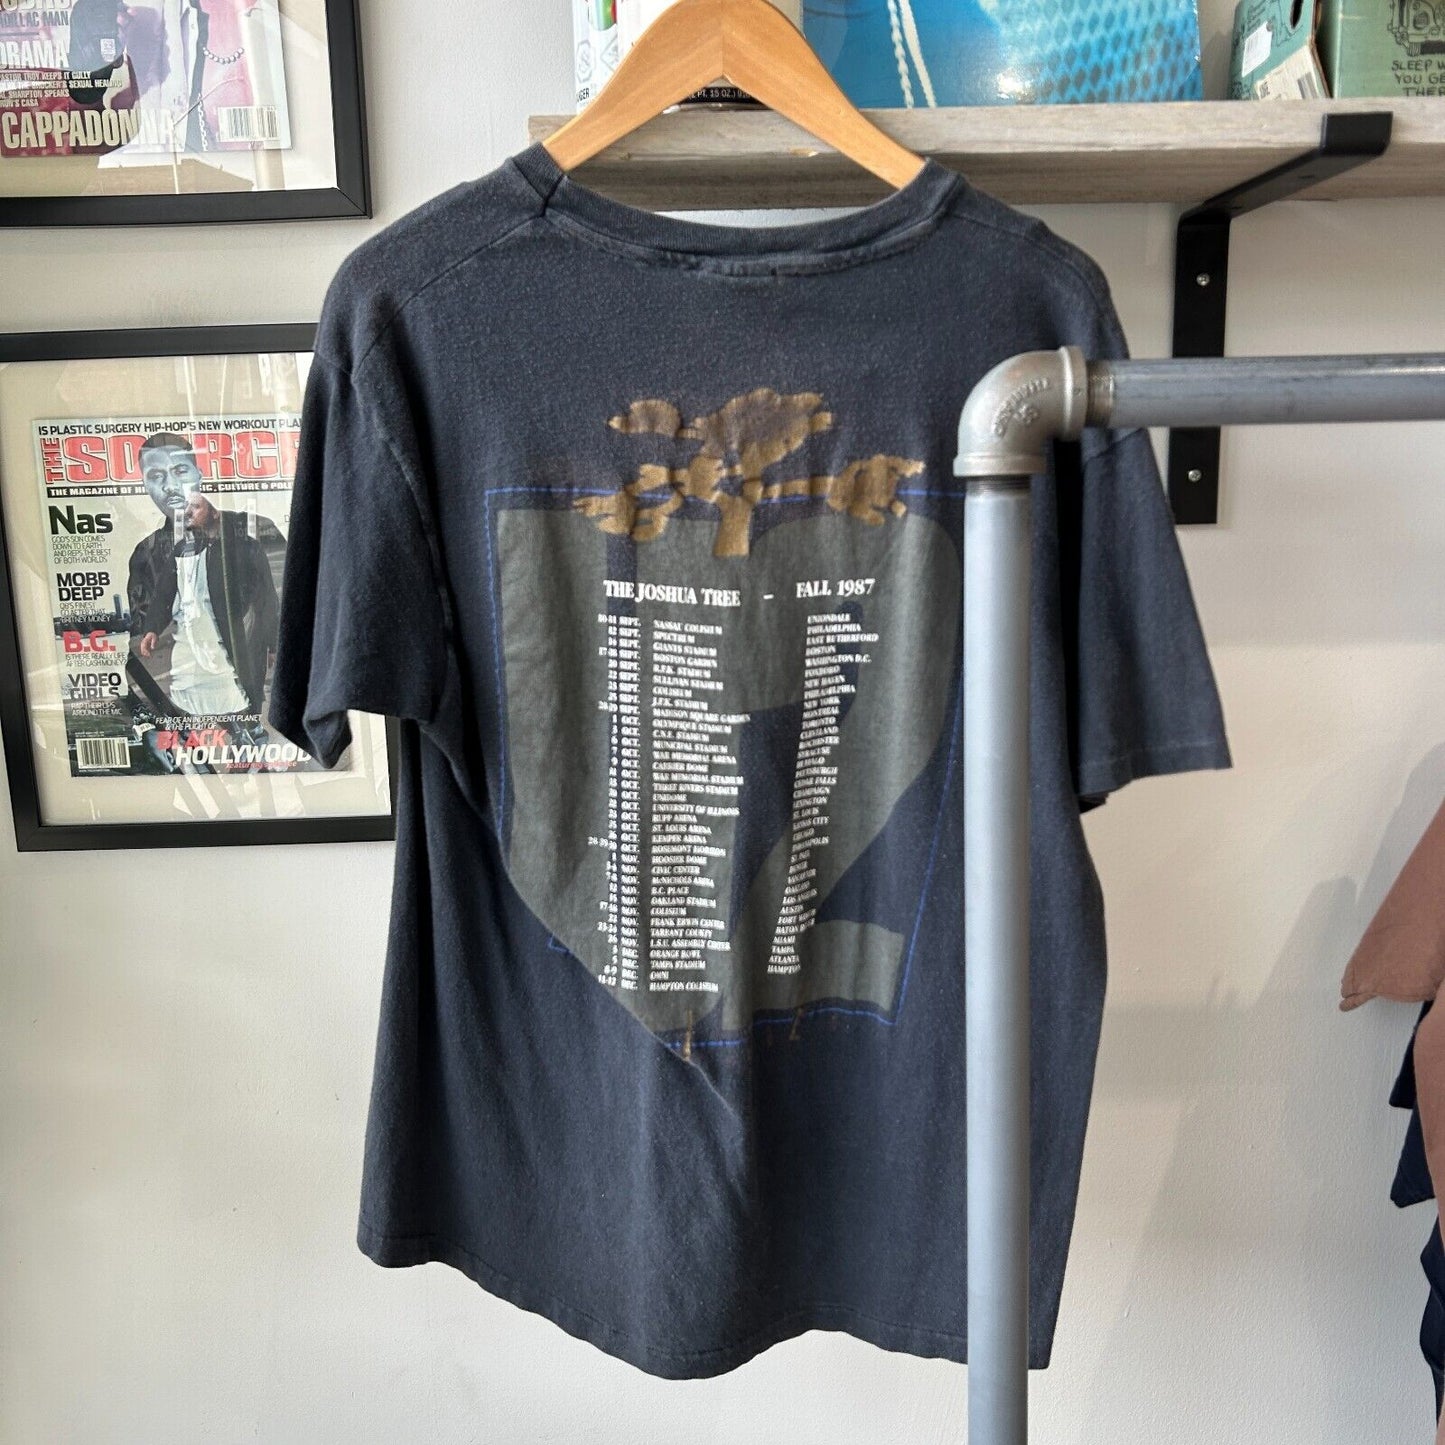 VINTAGE 80s | U2 Live Tour Band T-Shirt sz M Adult